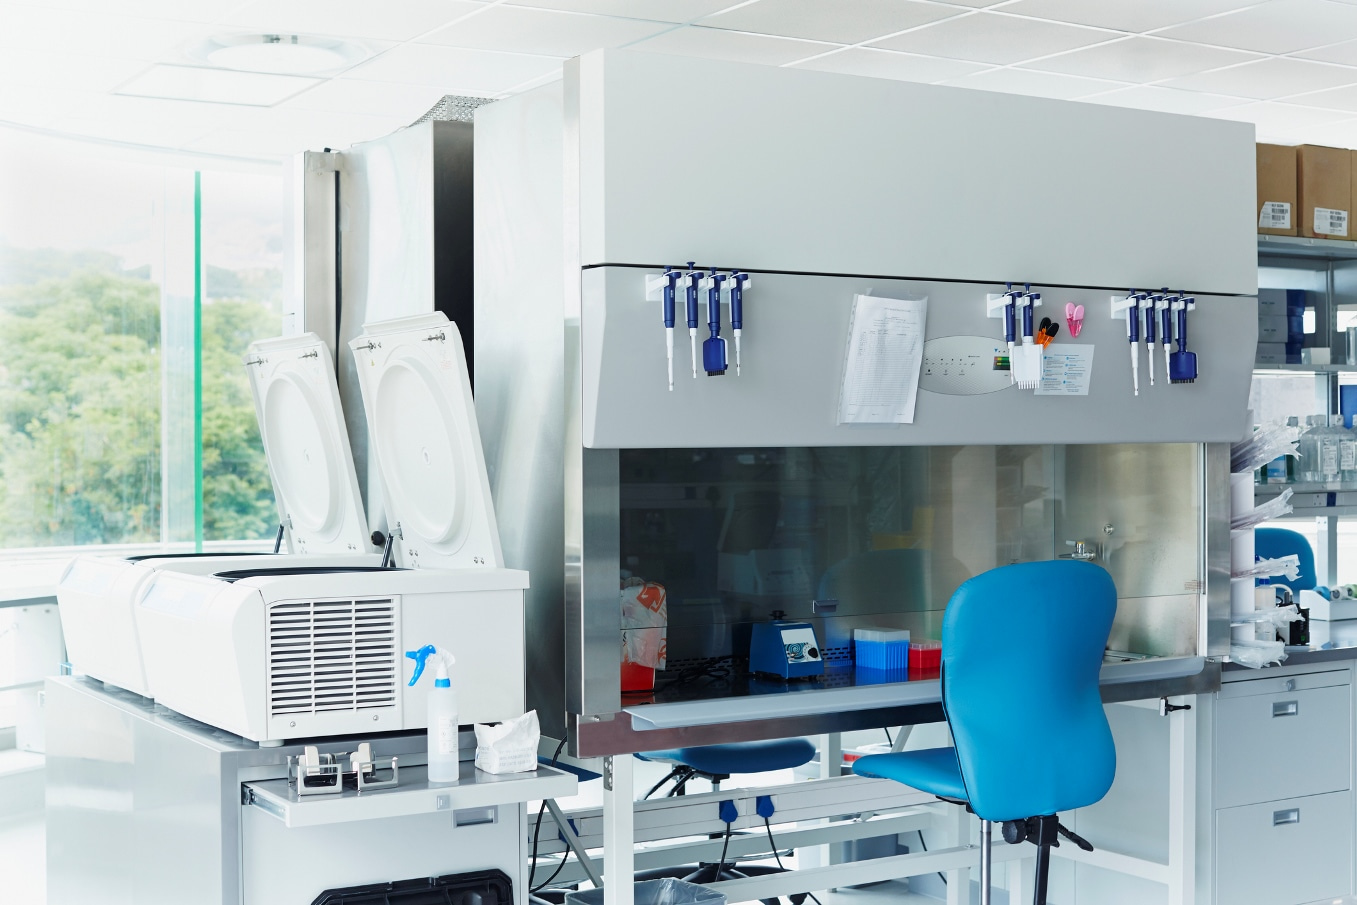 Intérieur du laboratoire avec divers instruments, outils et équipements pour les tests et l’expérimentation.